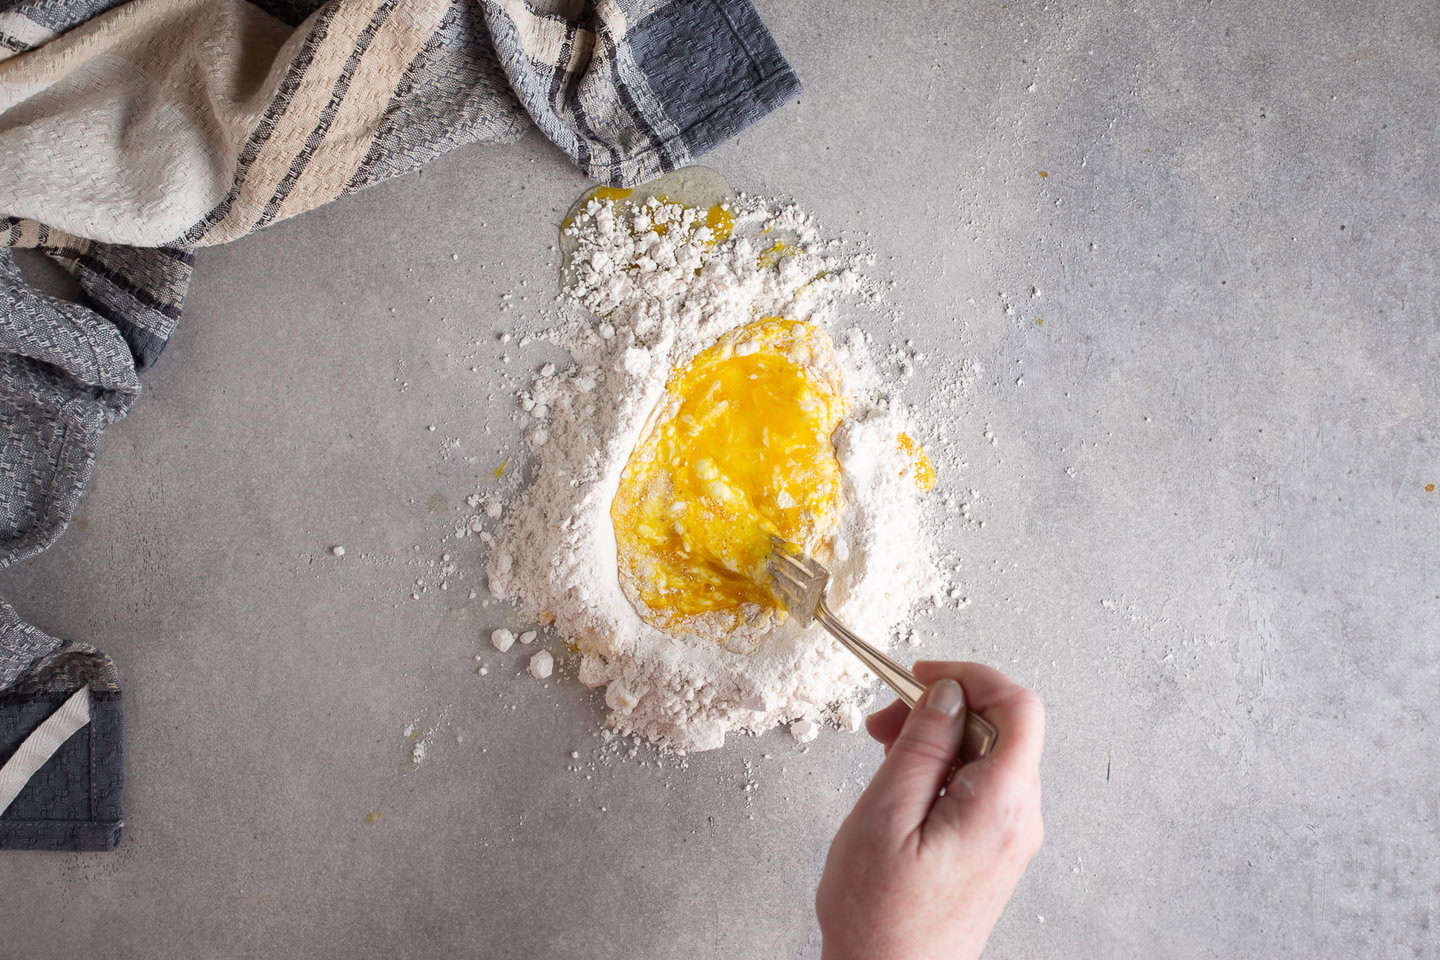 Whisking eggs into flour to make a dough.